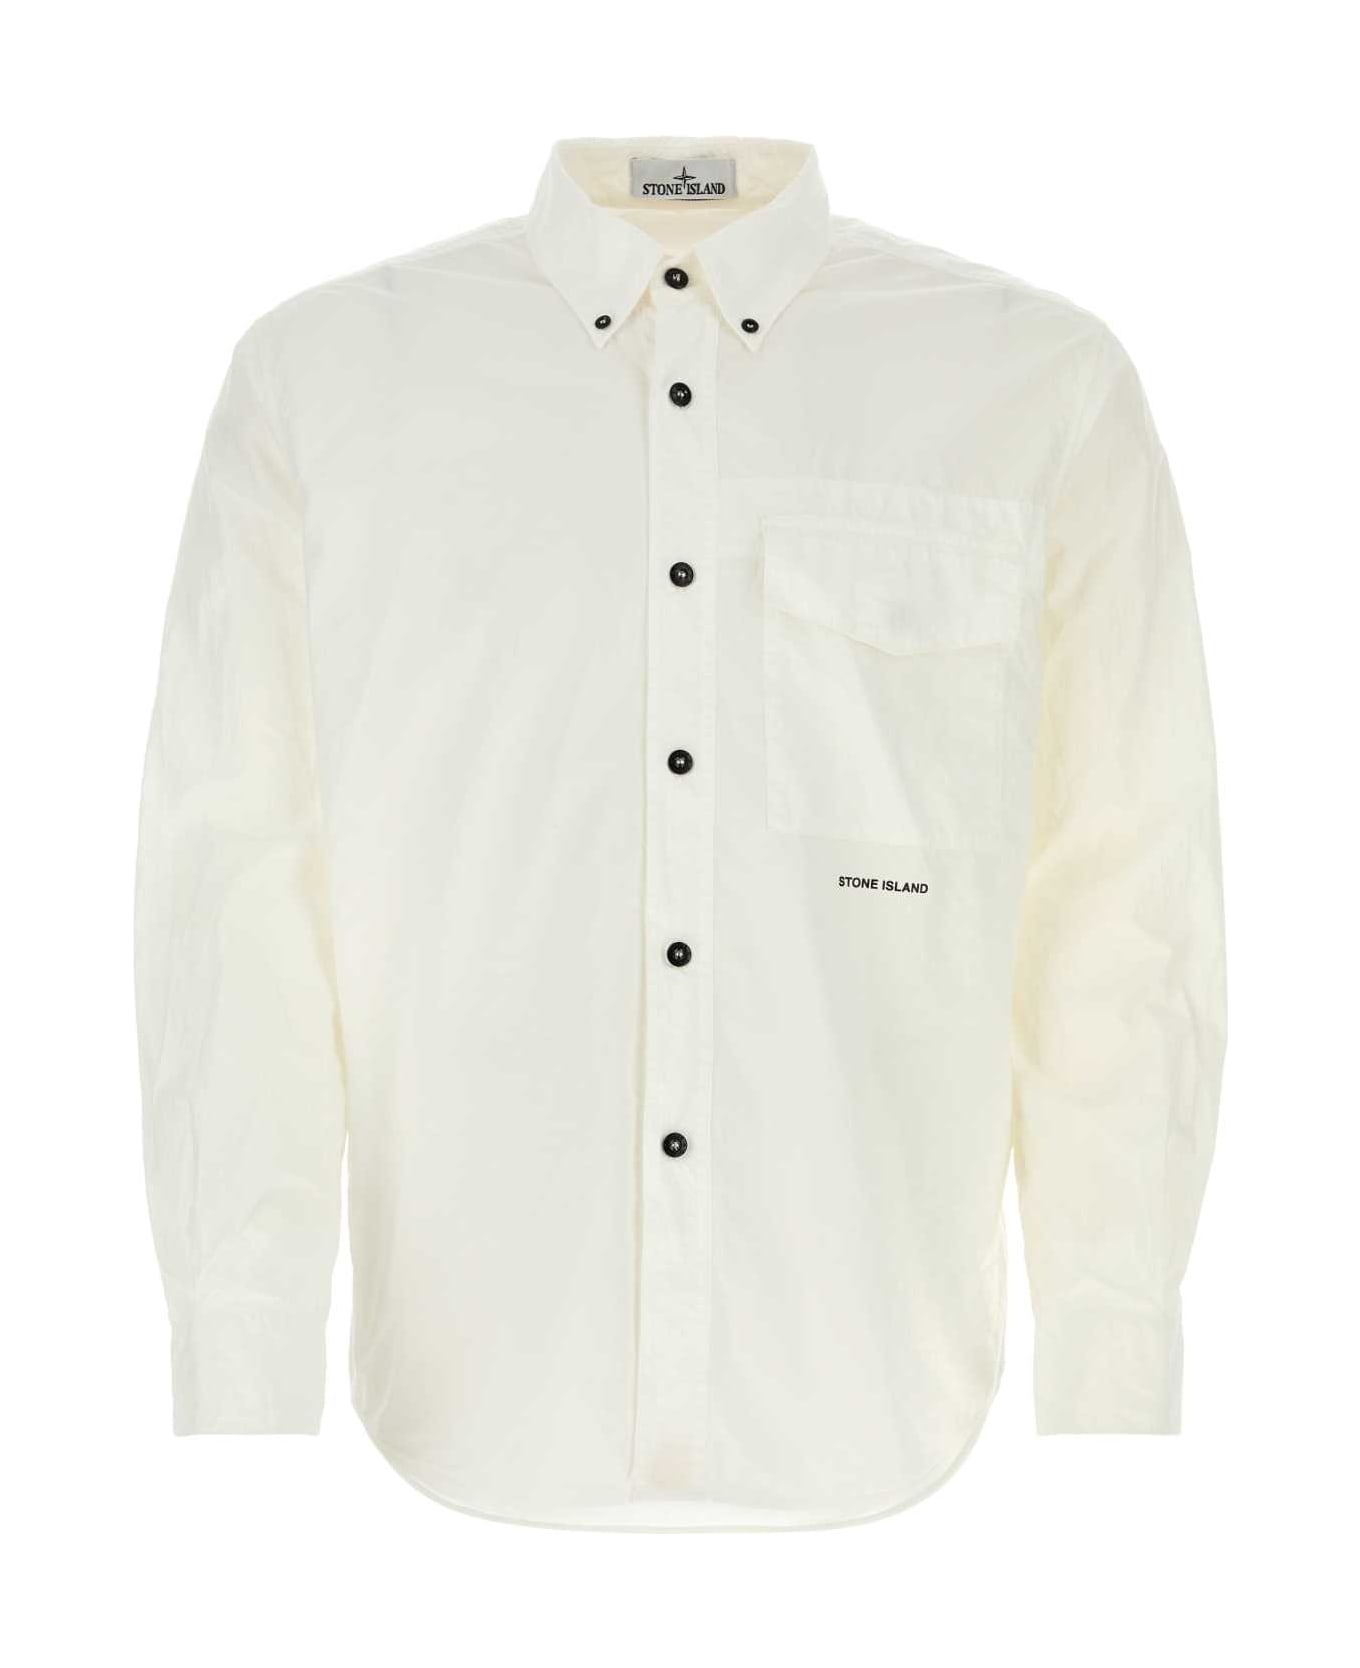 Stone Island White Cotton Shirt - Bianco ニットウェア